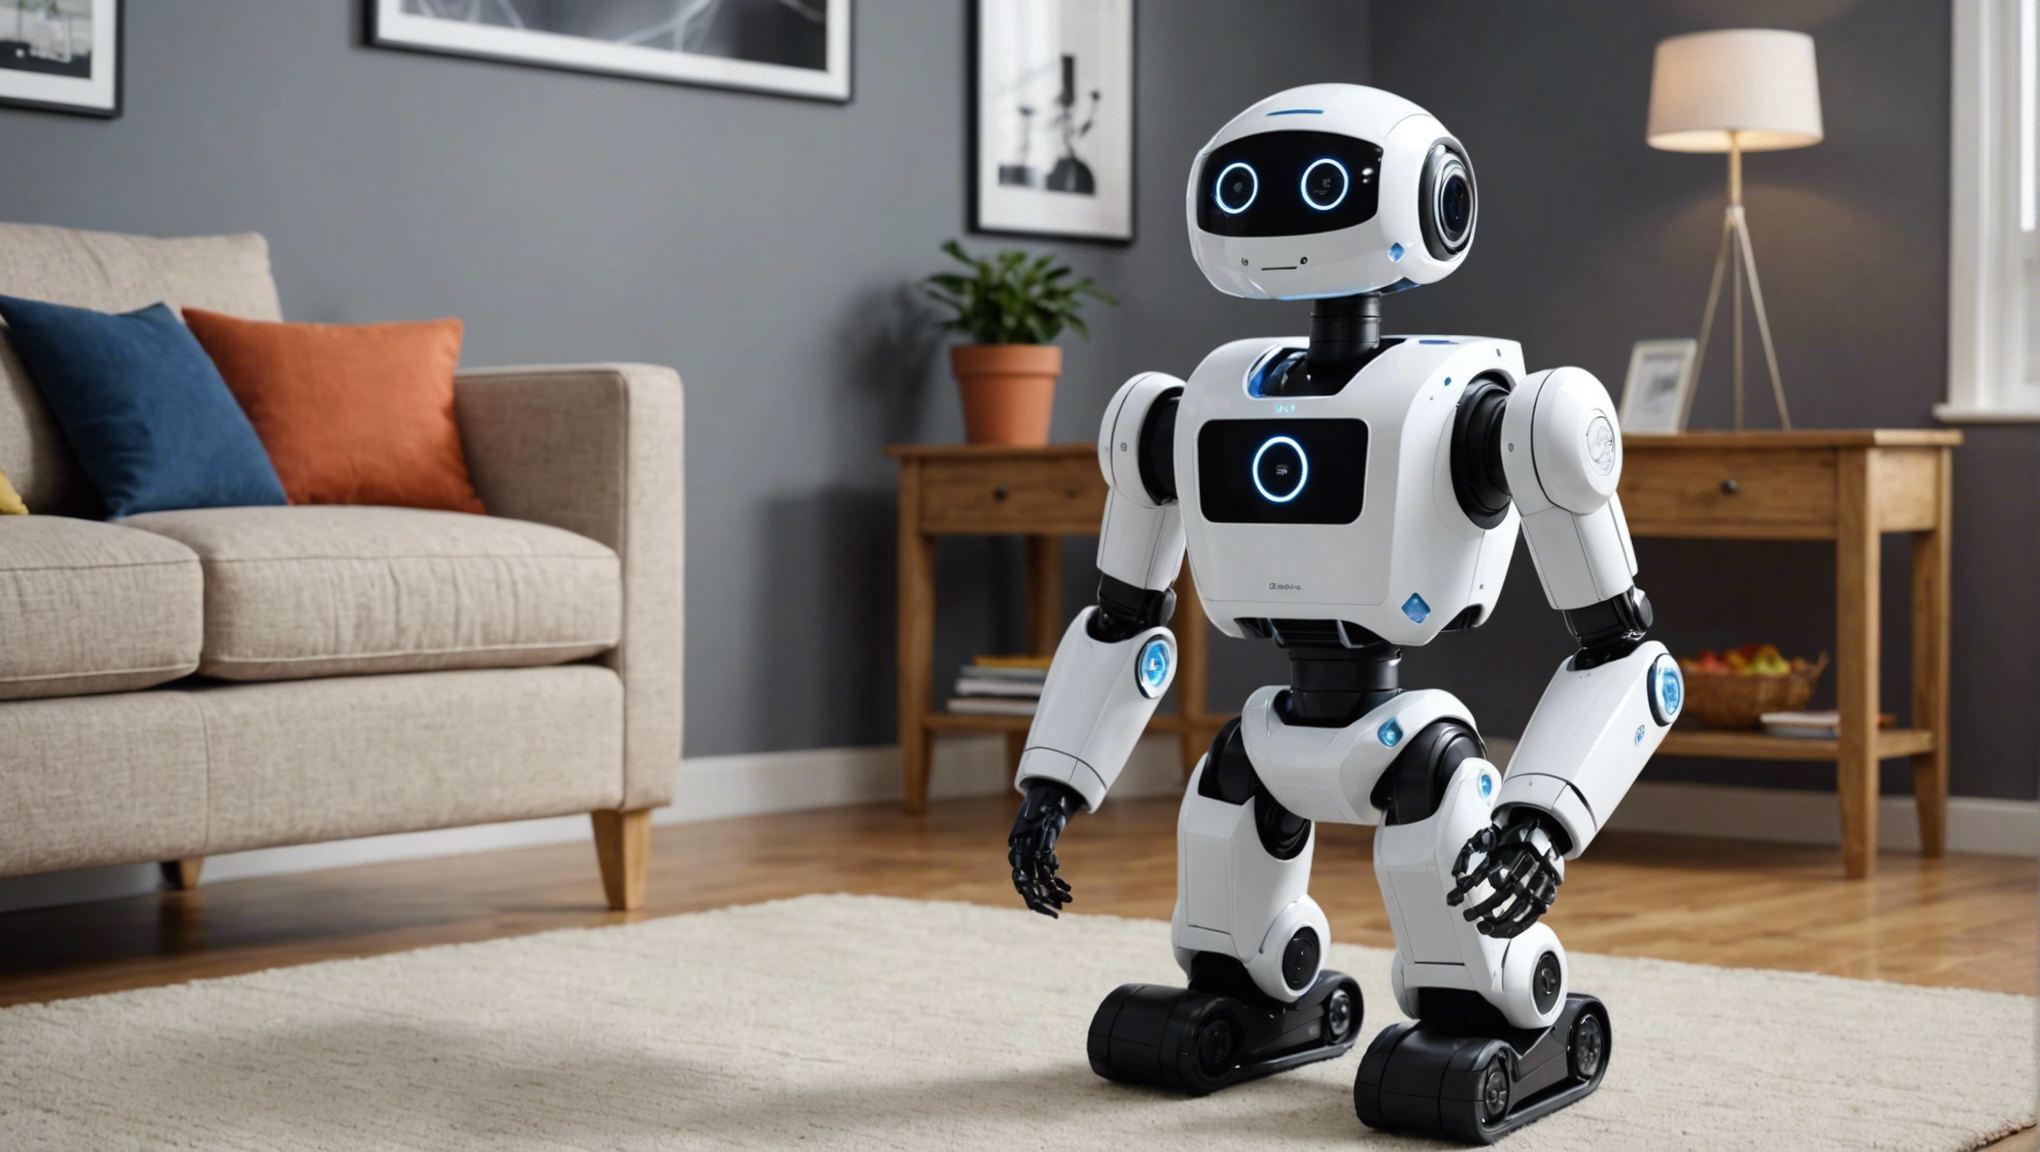 besoin d'aide à la maison ? louez-vous un robot dans le gers (32) ! découvrez nos services de location de robots pour faciliter votre quotidien. réservez dès maintenant.